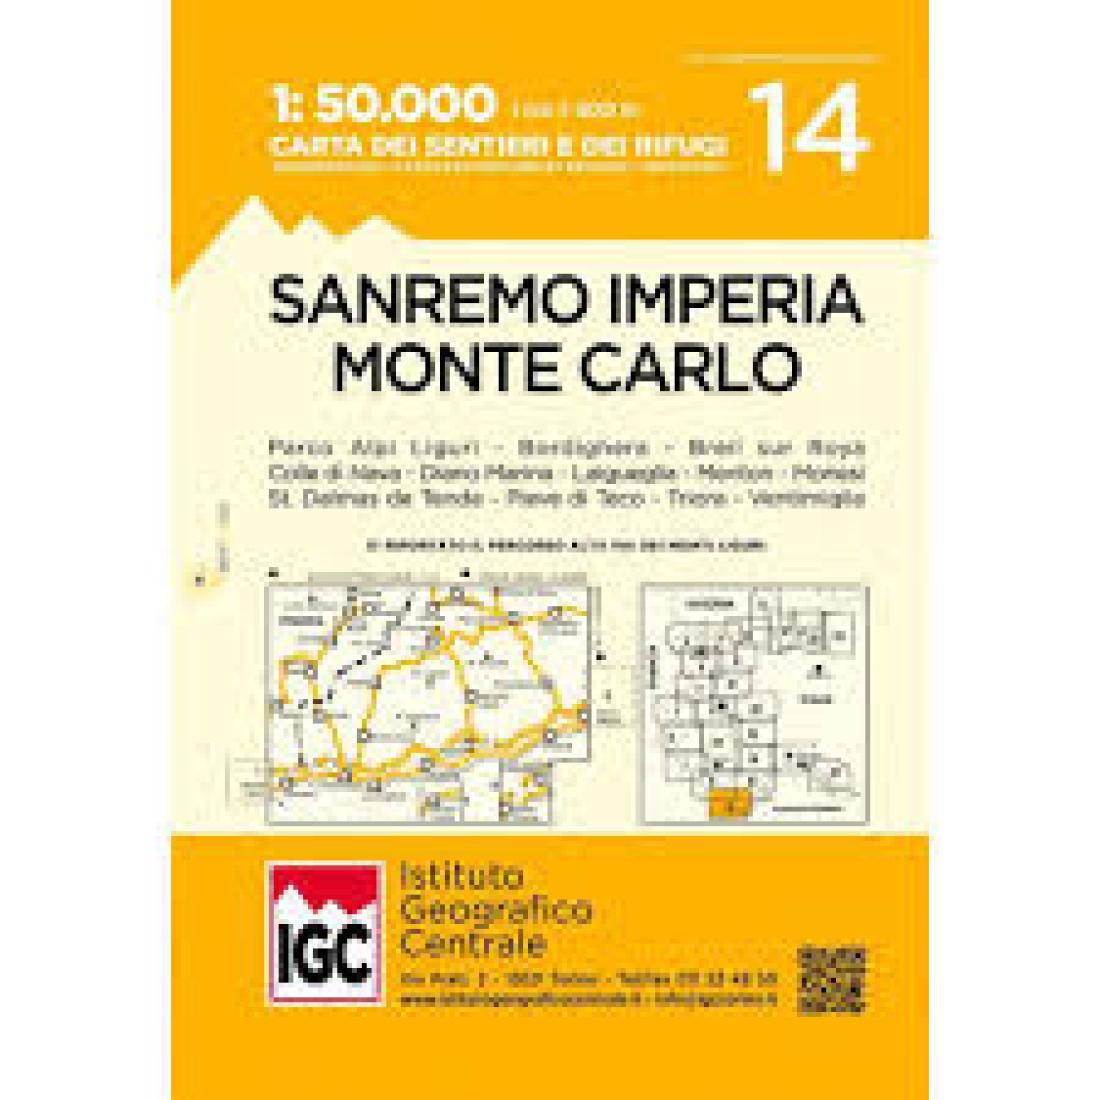 Sanremo Imperia Monte Carlo